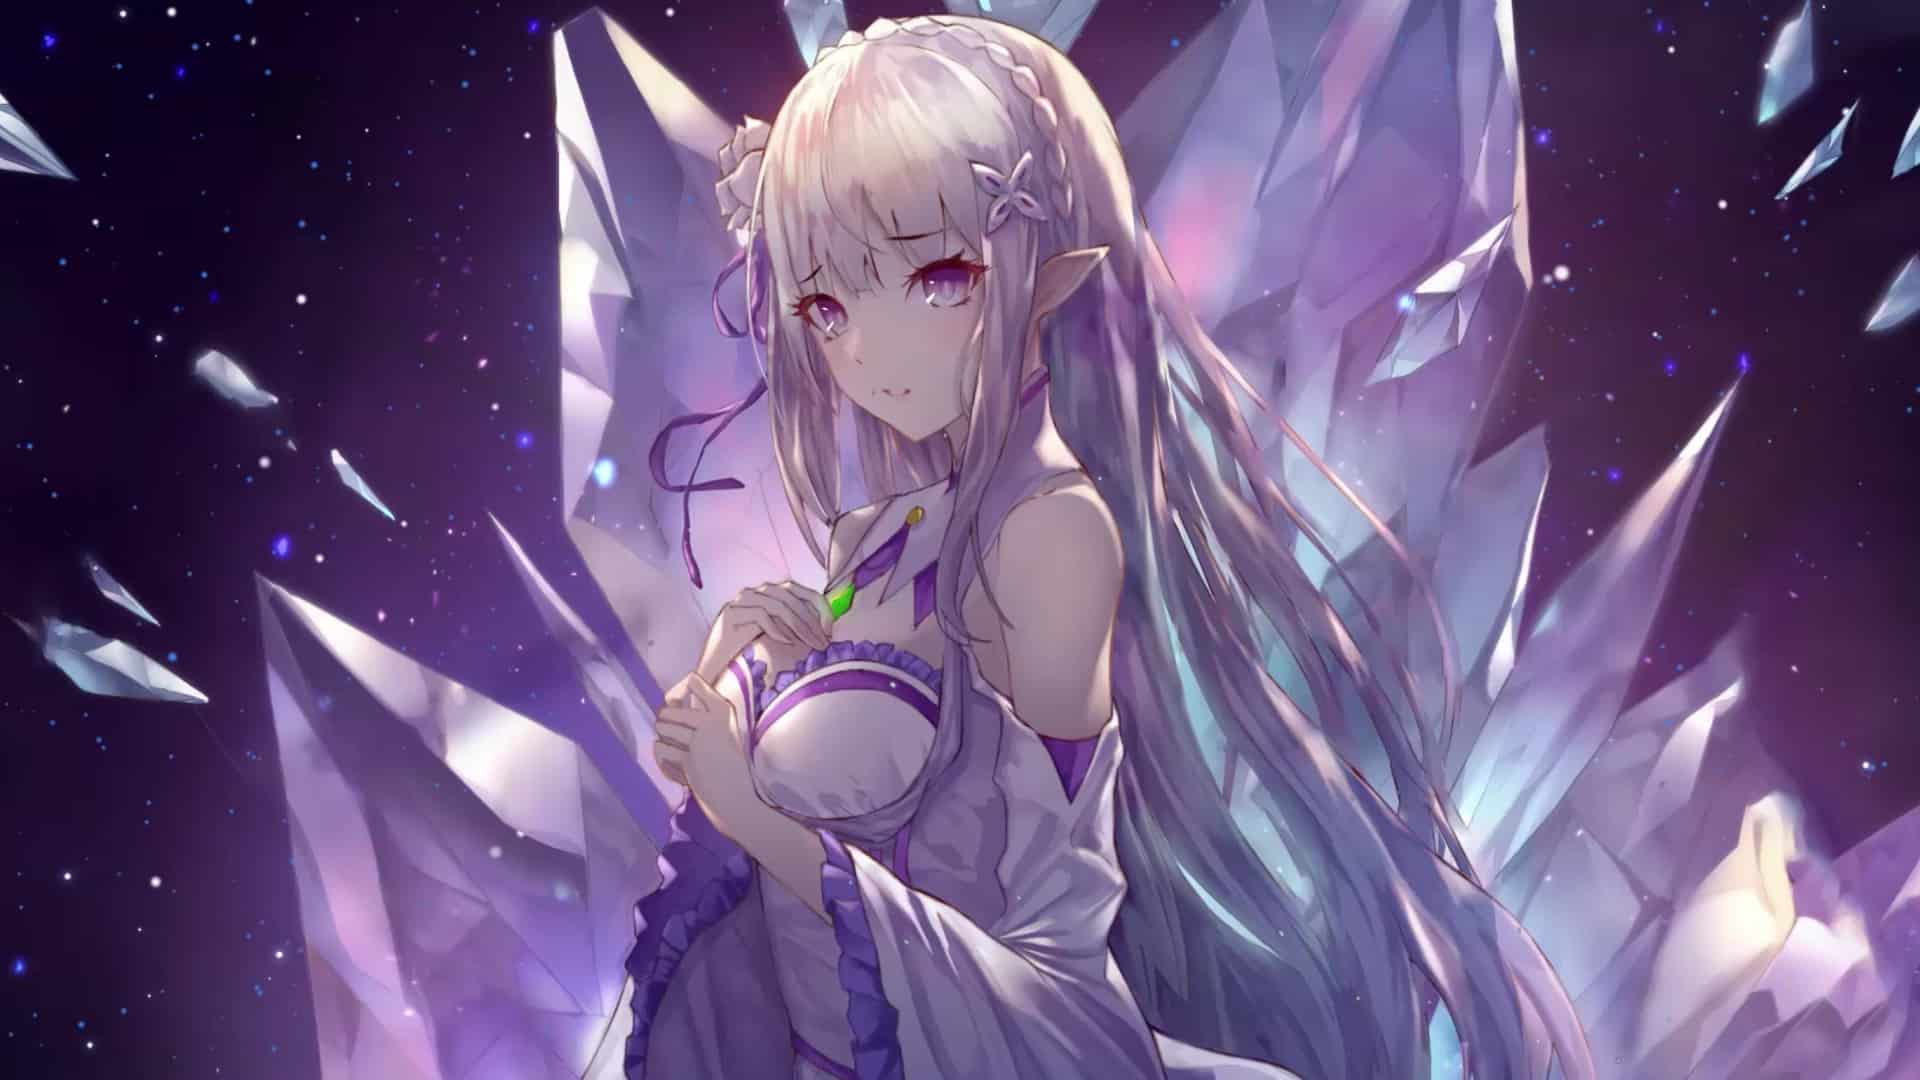 Emilia 